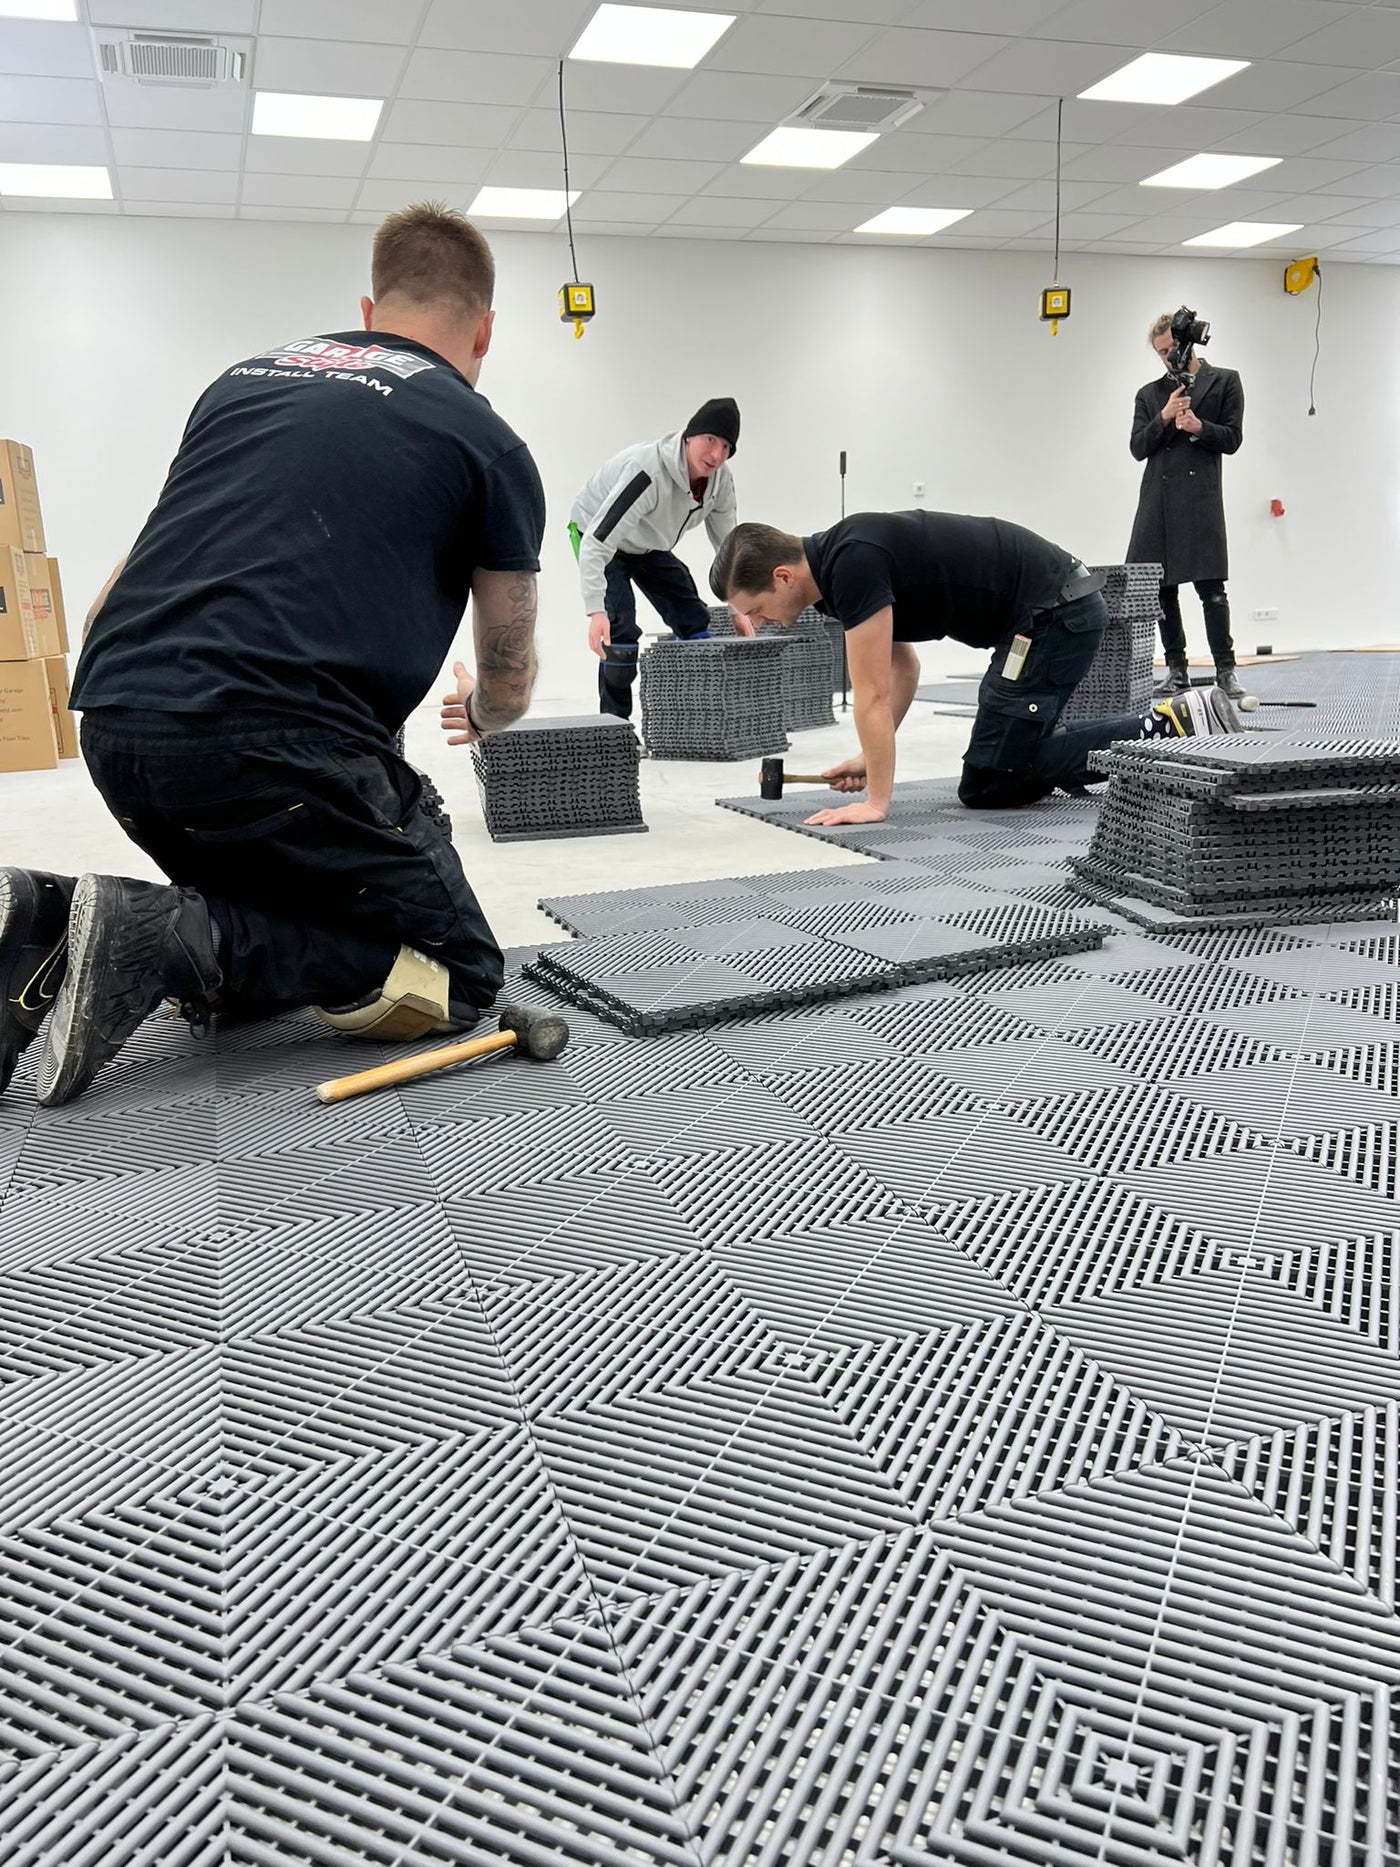 Our First Garage Floor Install In Düsseldorf, Germany